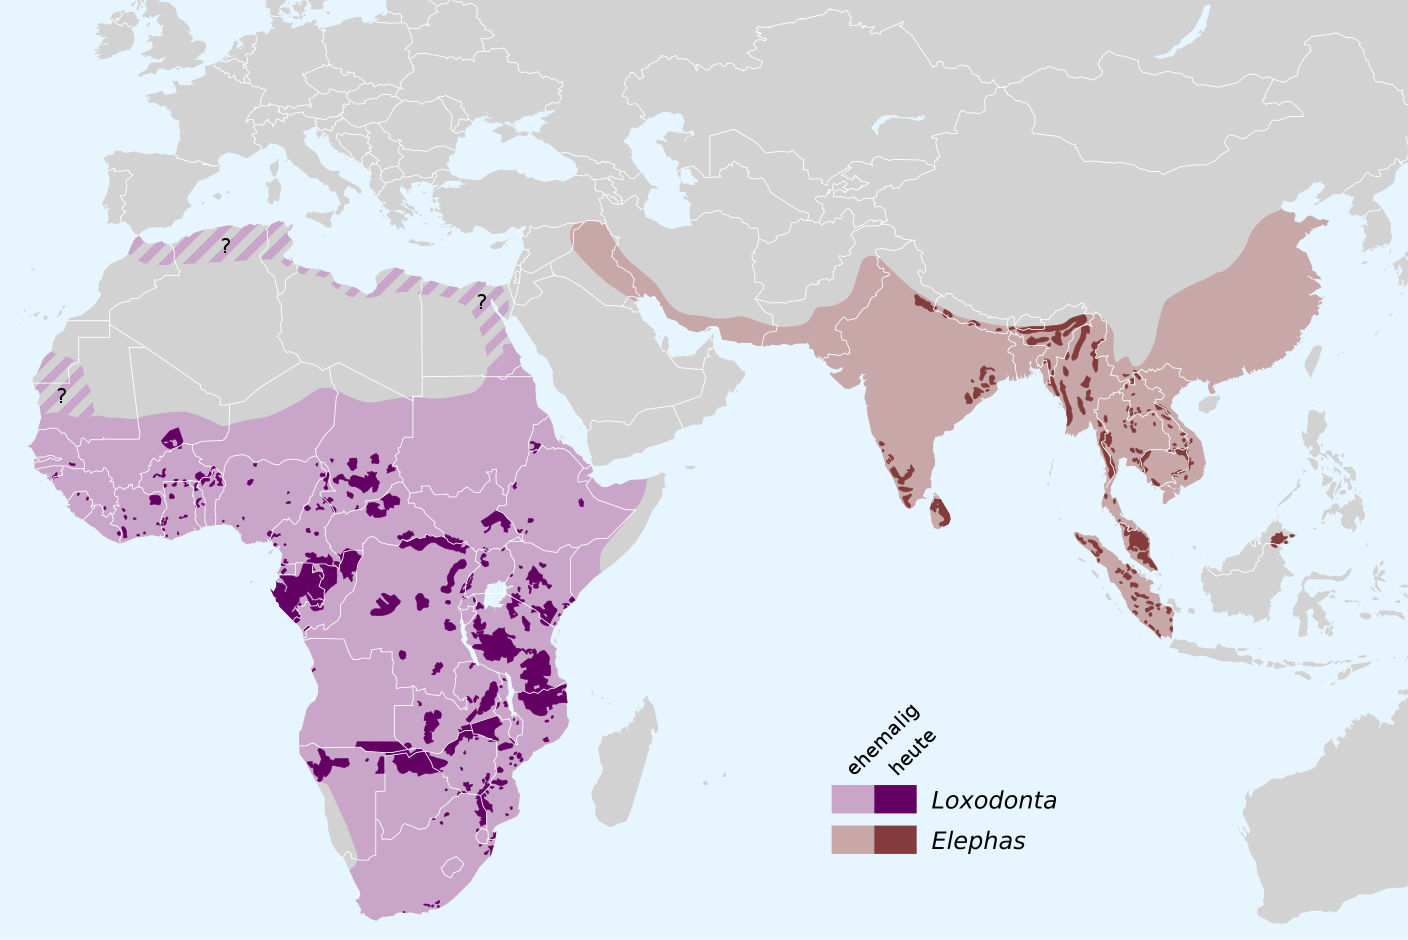 Ehemaliges (hellerer Farbton) und heutiges (dunklerer Farbton) Verbreitungsgebiet des Elefanten